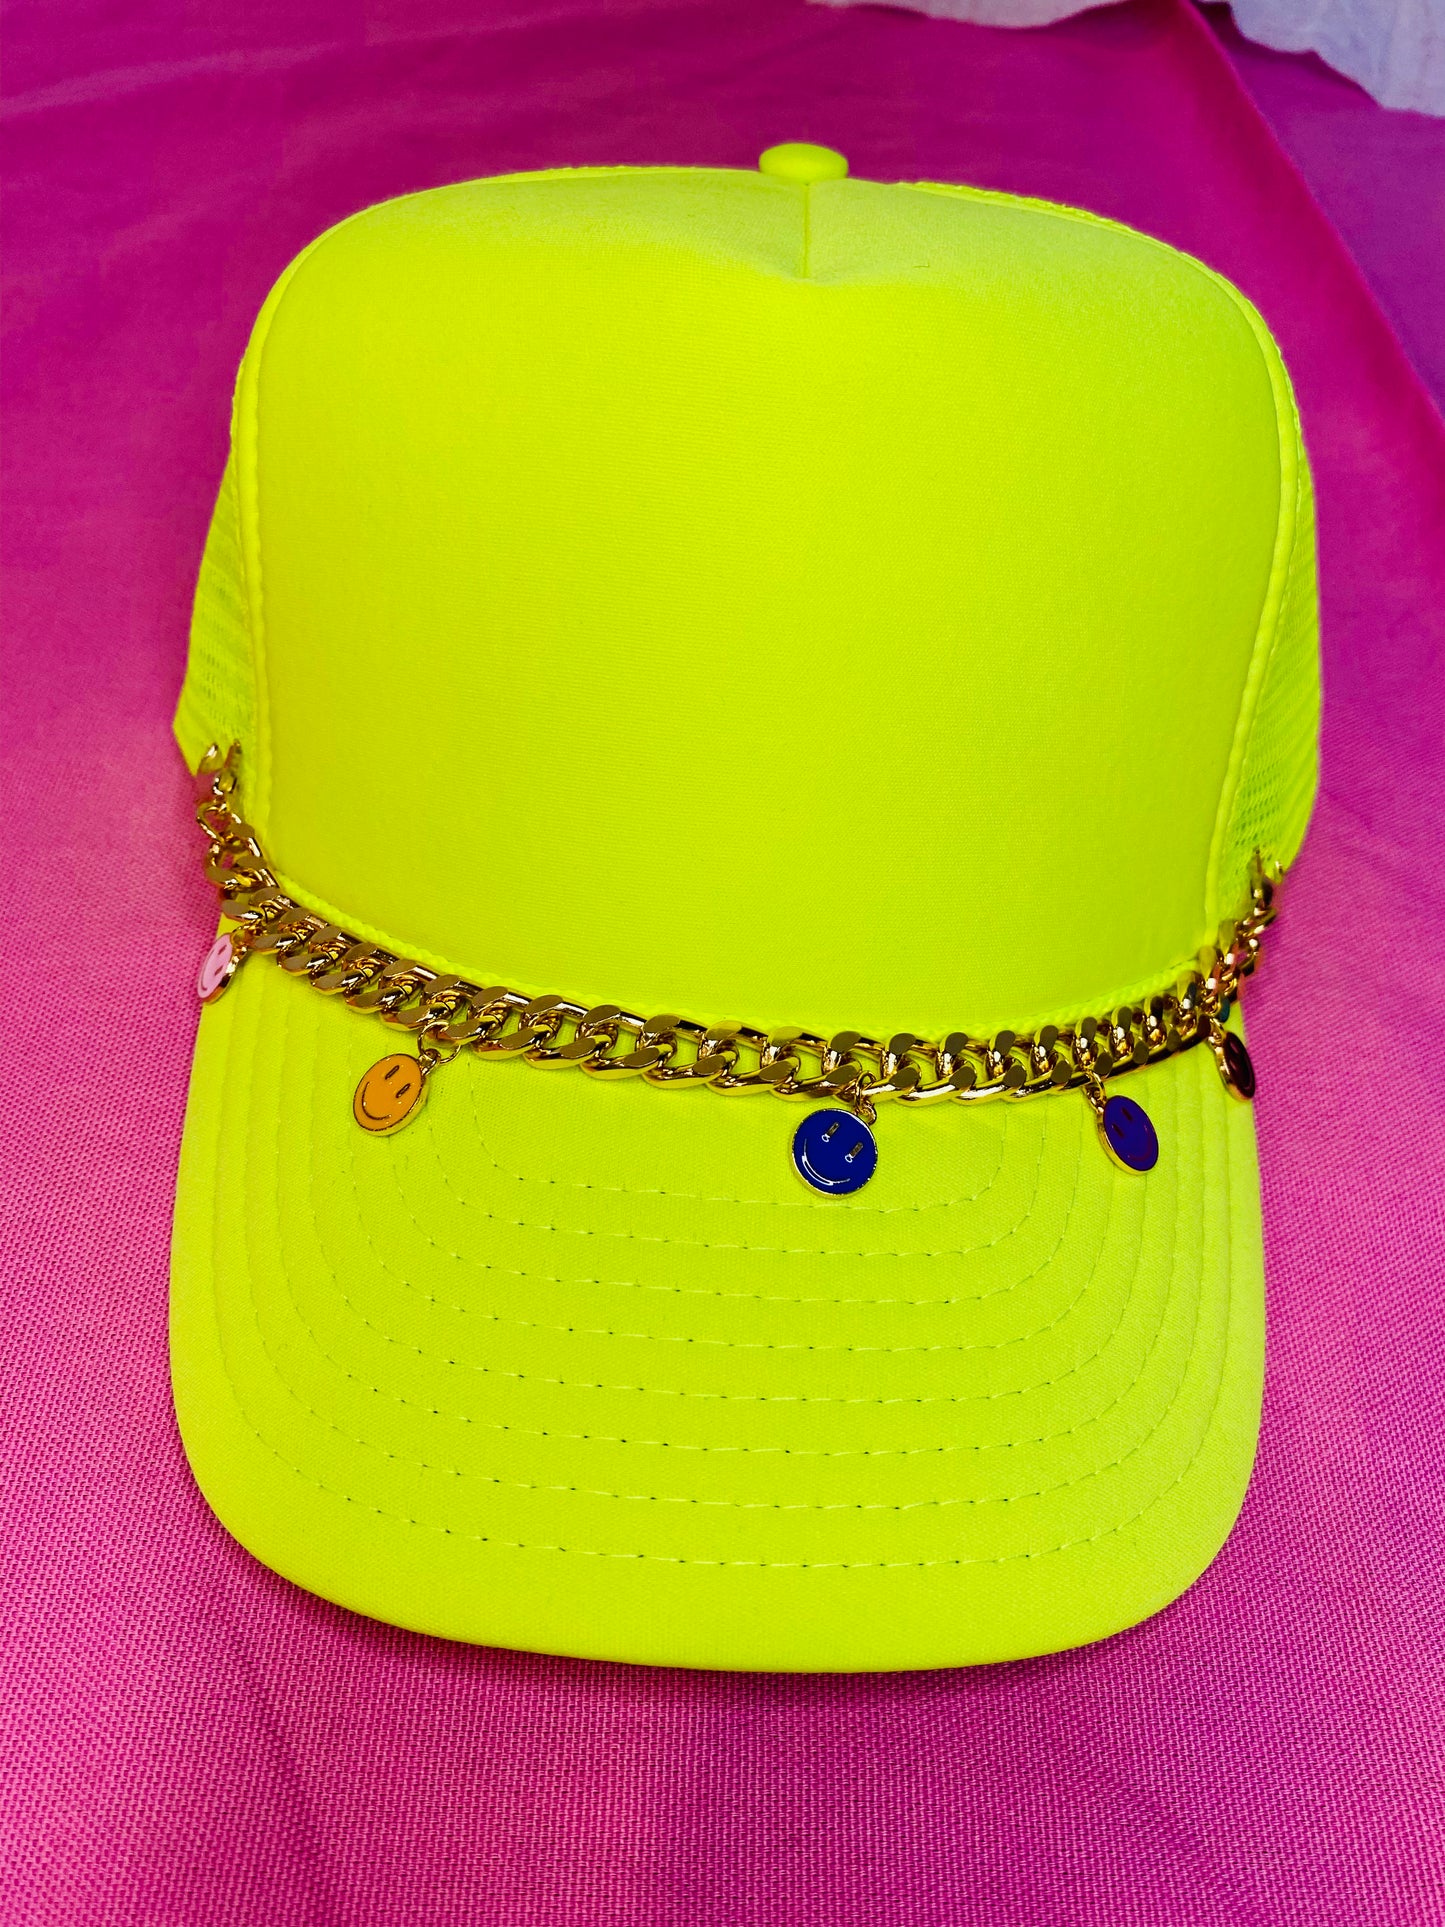 Decorative hat chain